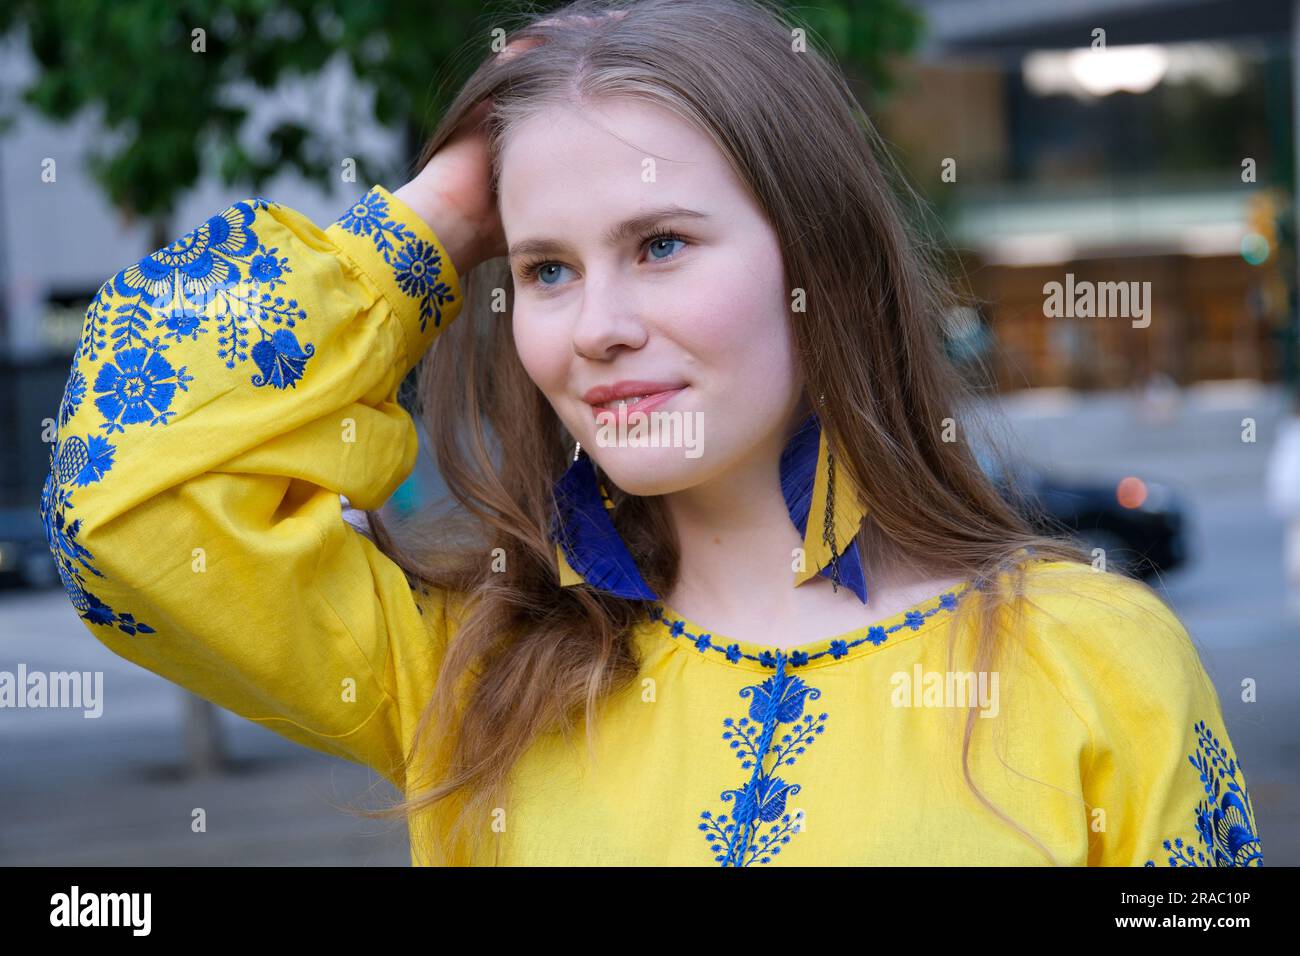 lisciate i capelli con le mani lunghi orecchini pendenti in fiori blu e gialli ricamati. La ragazza indossa una camicia ricamata, abiti nazionali ucraini, una camicia gialla. Foto Stock